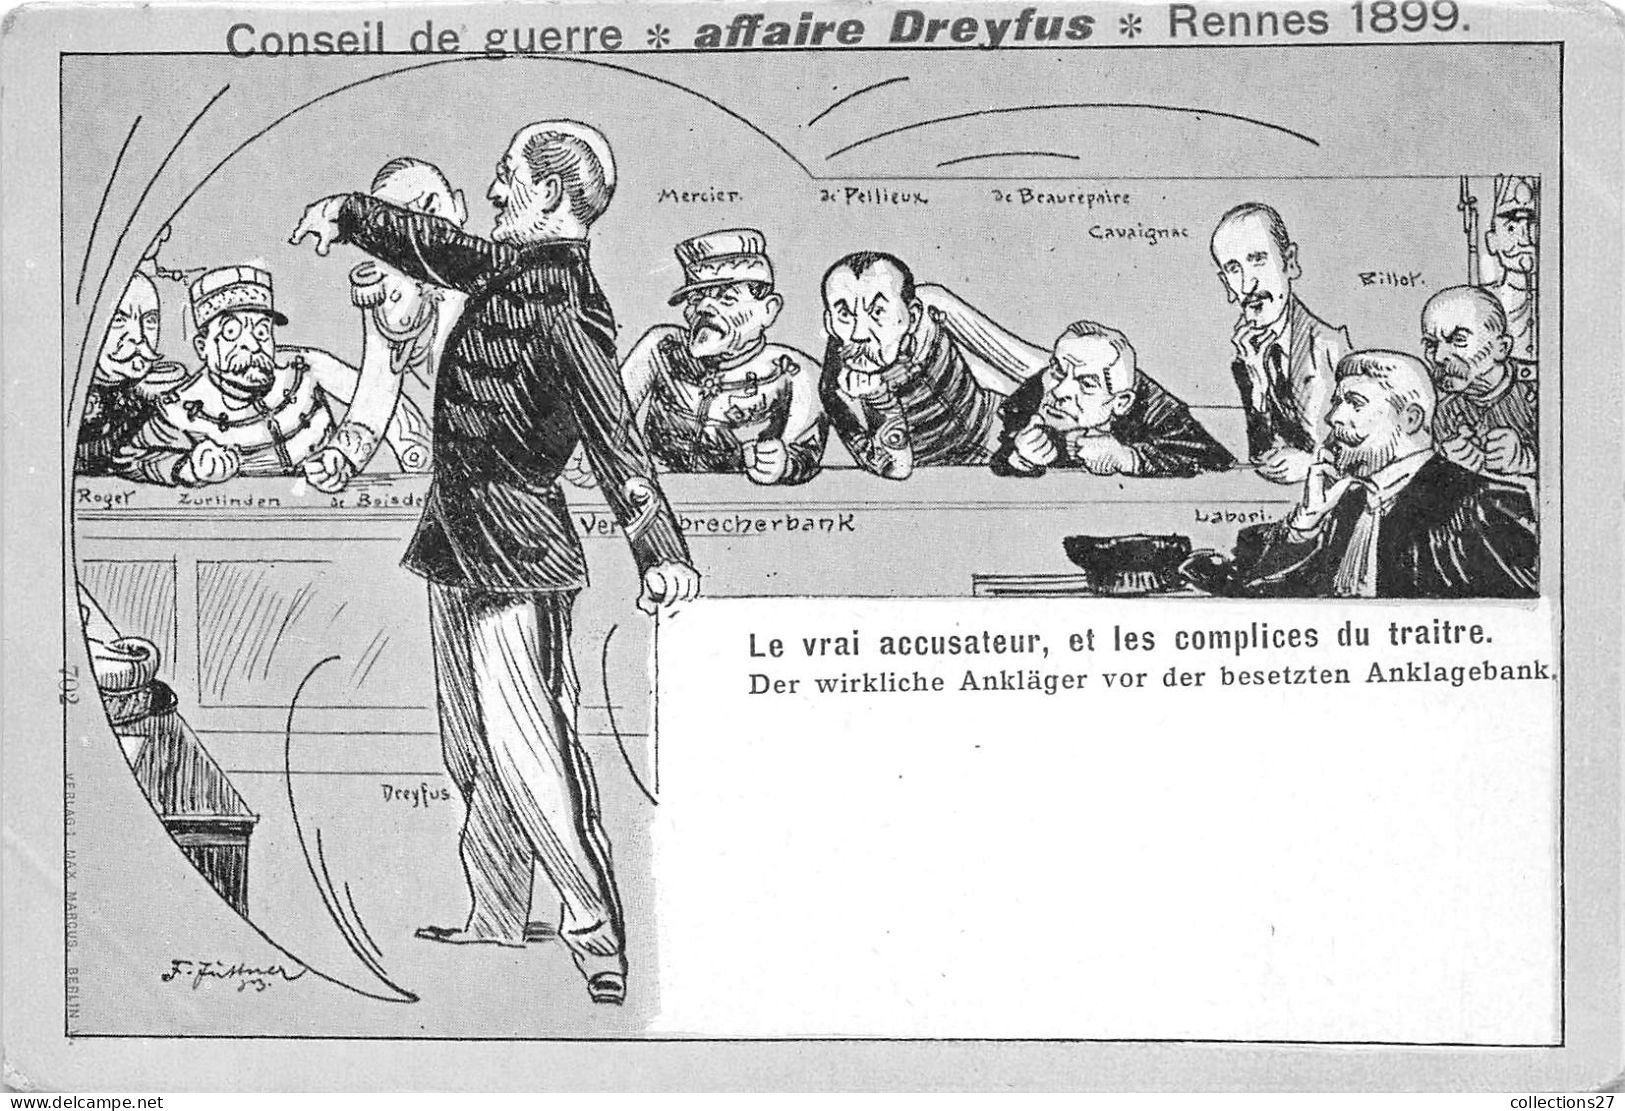 AFFAIRE DREYFUS- CONSEIL DE GUERRE- RENNES 1899 - LE VRAI ACCUSATEUR ET LES COMPLICES DU TRAITRE - Personnages